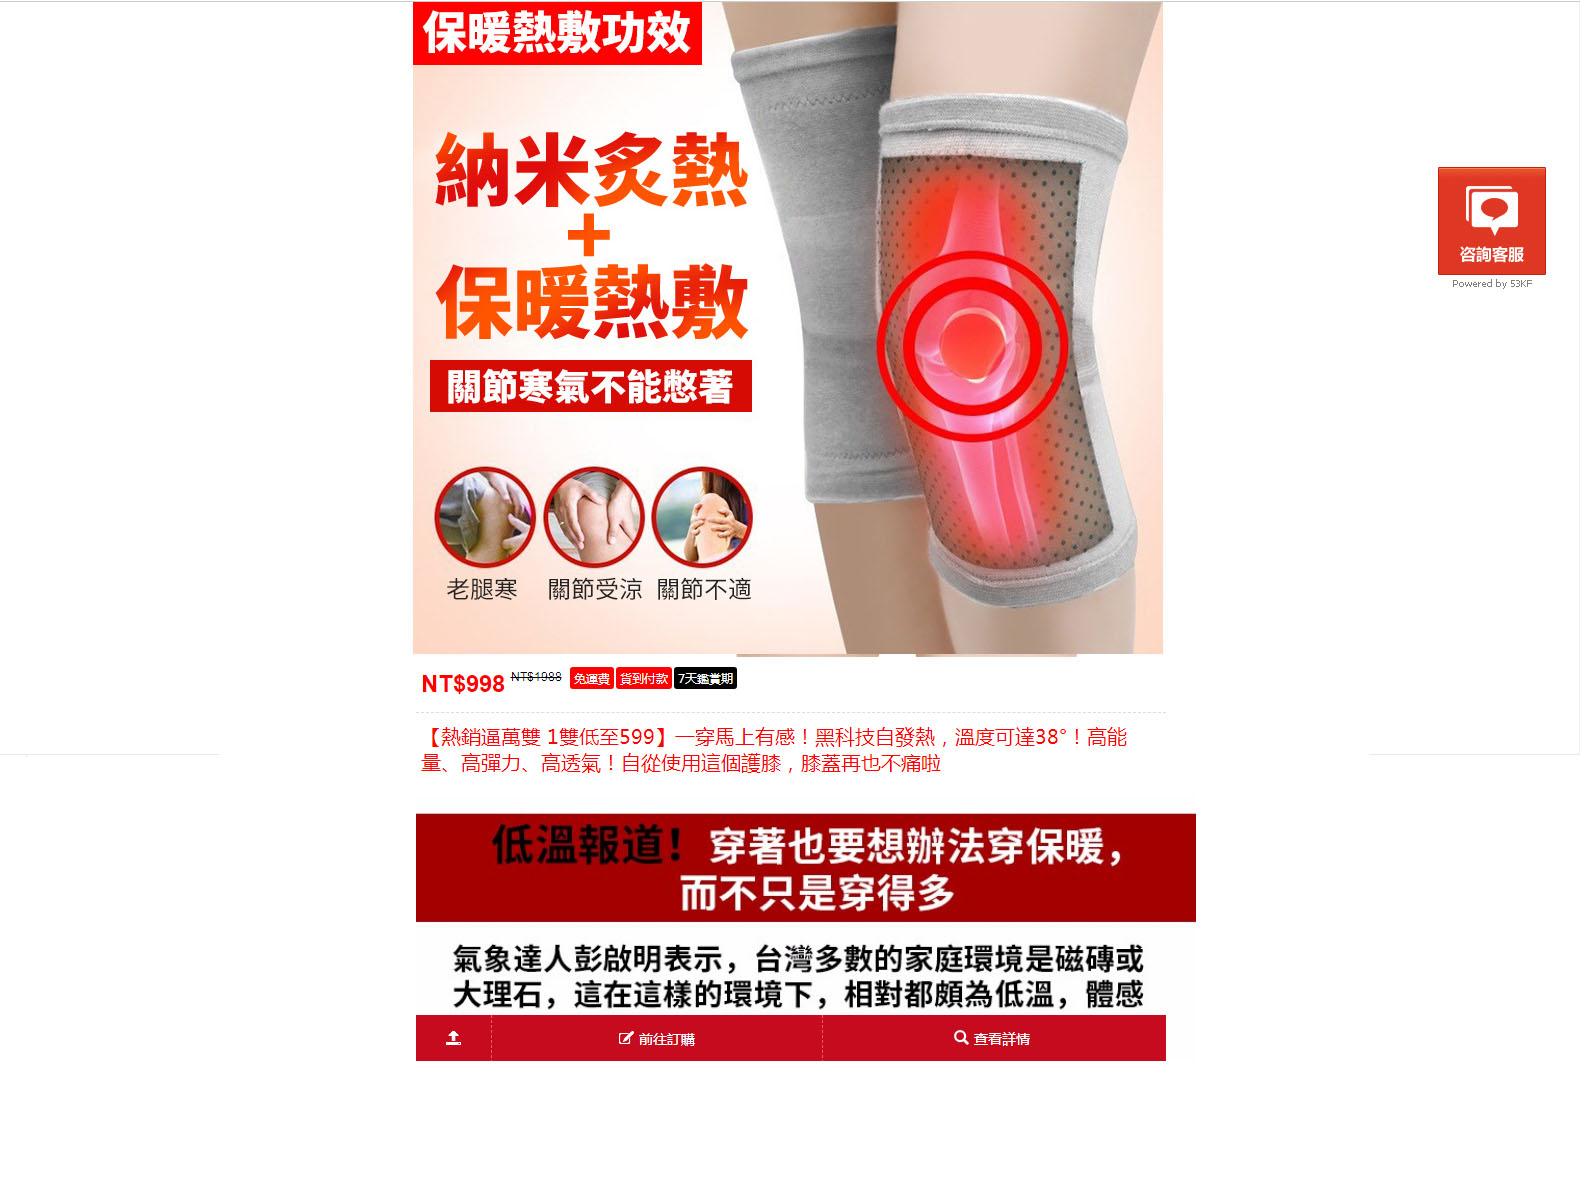 日本黑科技發熱護膝專賣店-關節扭傷保護保暖護膝,運動護膝品牌推薦